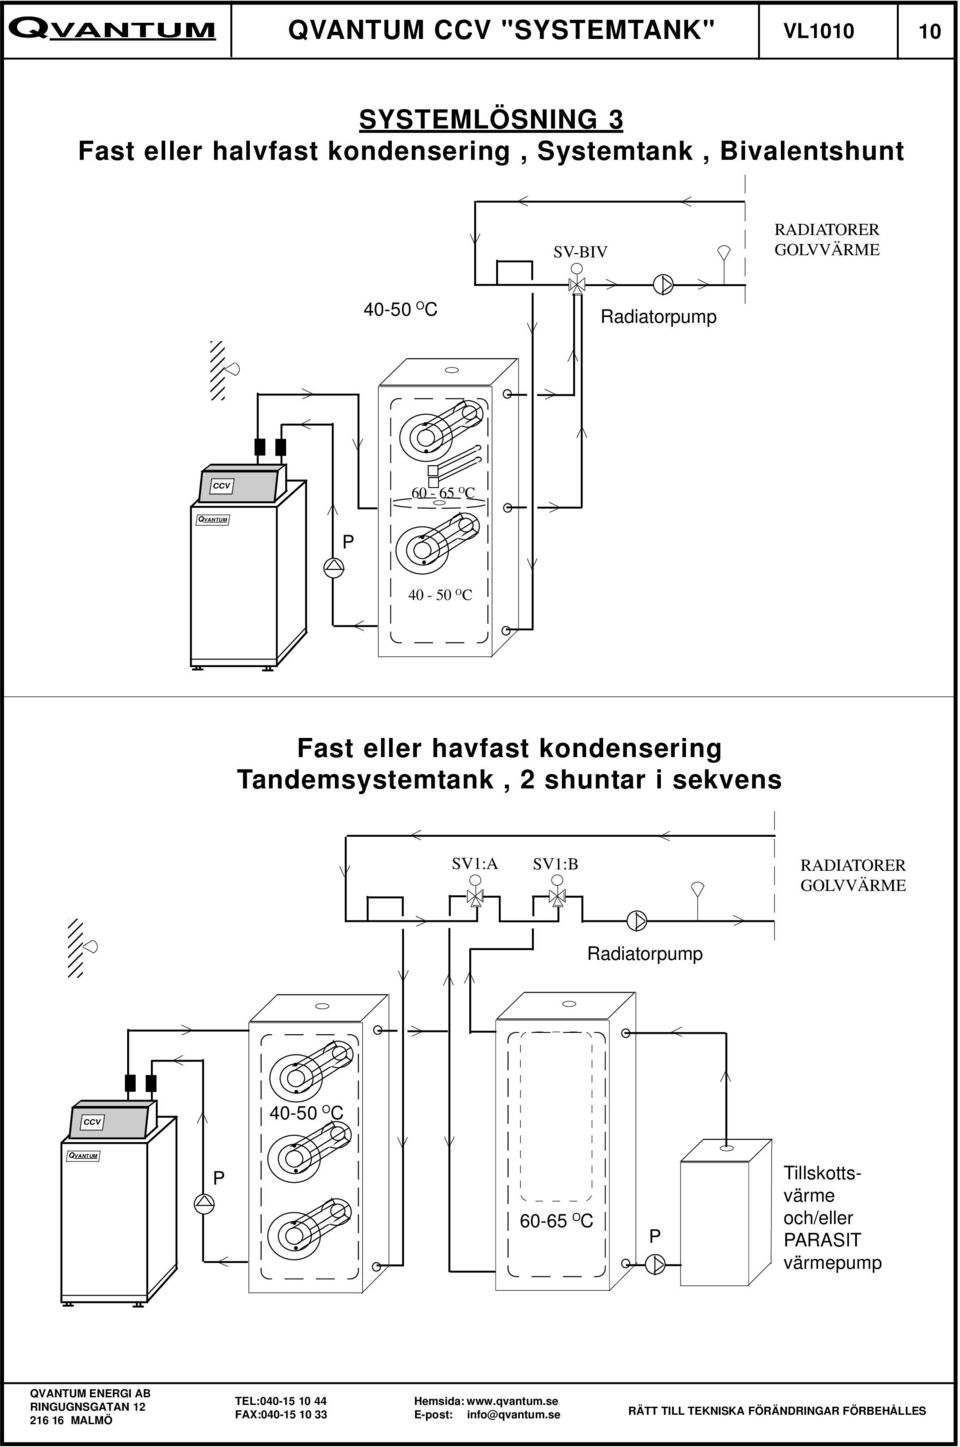 kondensering Tandemsystemtank, 2 shuntar i sekvens SV1:A SV1:B RADIATORER GOLVVÄRME 3 3 3 3 3 3